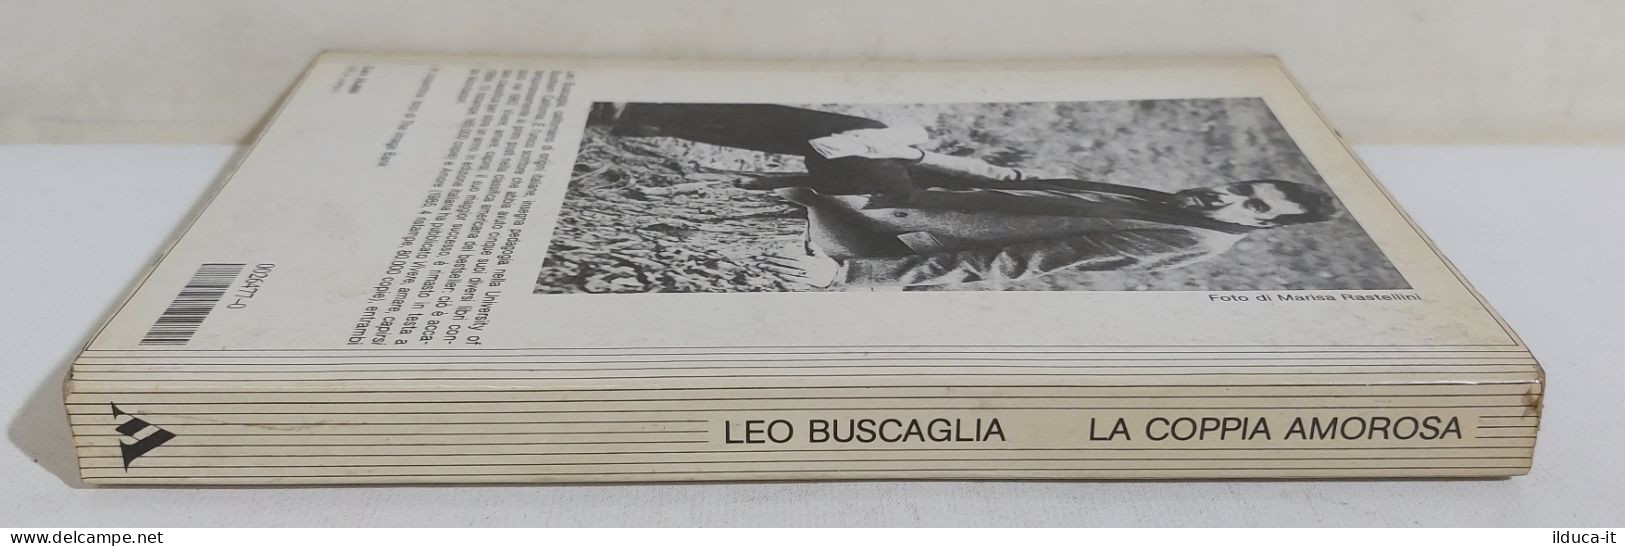 38942 V Leo Buscaglia - La Coppia Amorosa - Mondadori 1986 - Classic